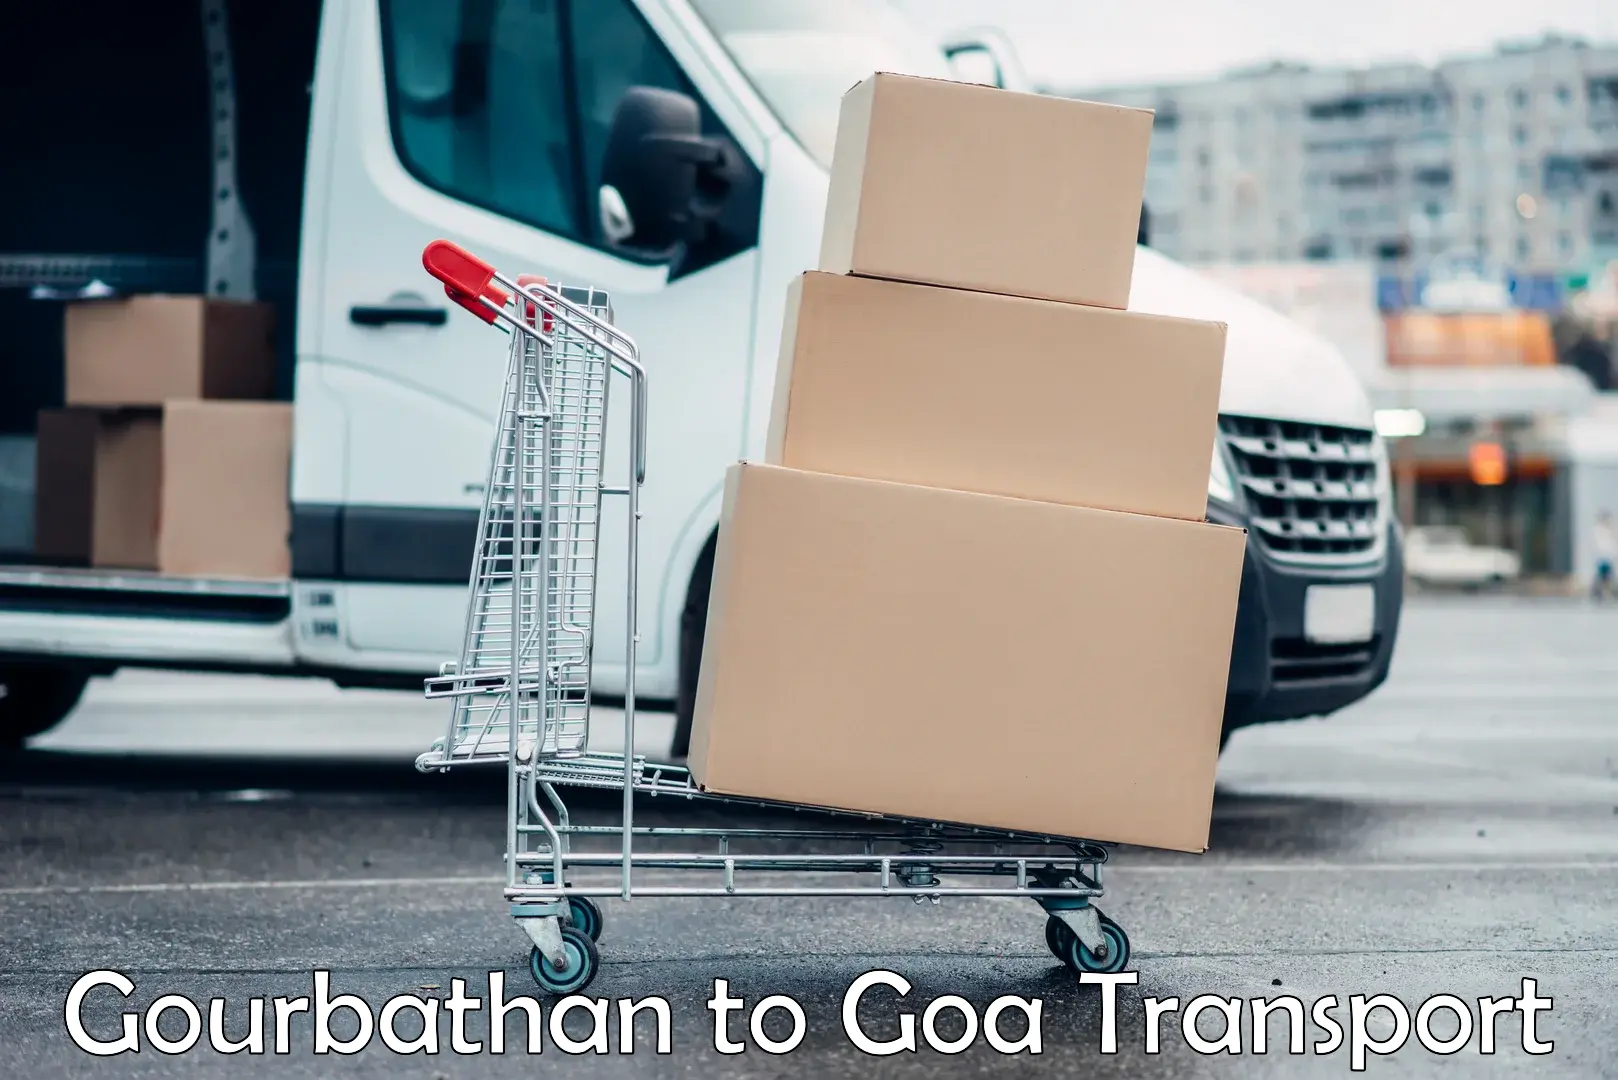 Delivery service Gourbathan to Goa